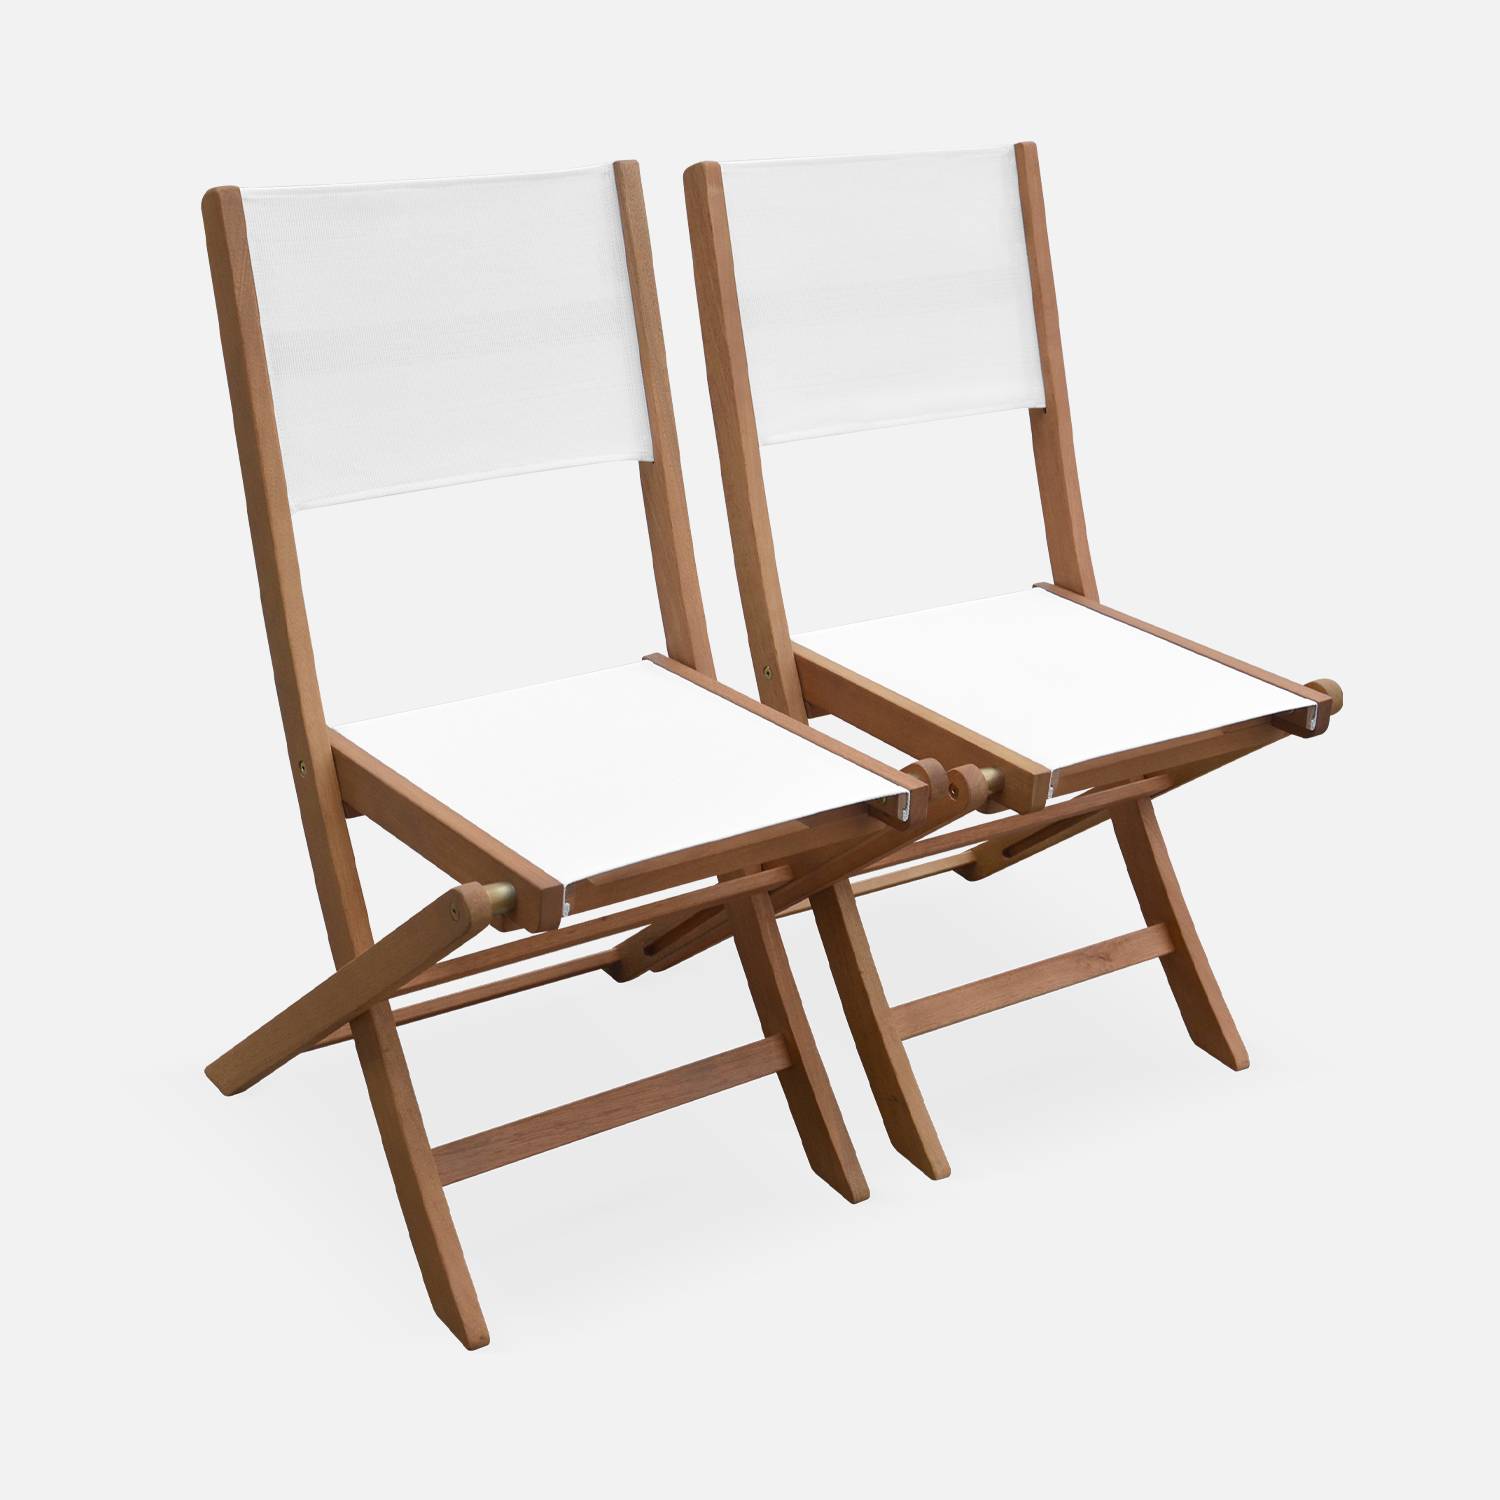 Sedie da giardino, in legno e textilene - modello: Almeria, colore: Bianco - 2 sedie pieghevoli in legno di eucalipto FSC oliato e textilene Photo3